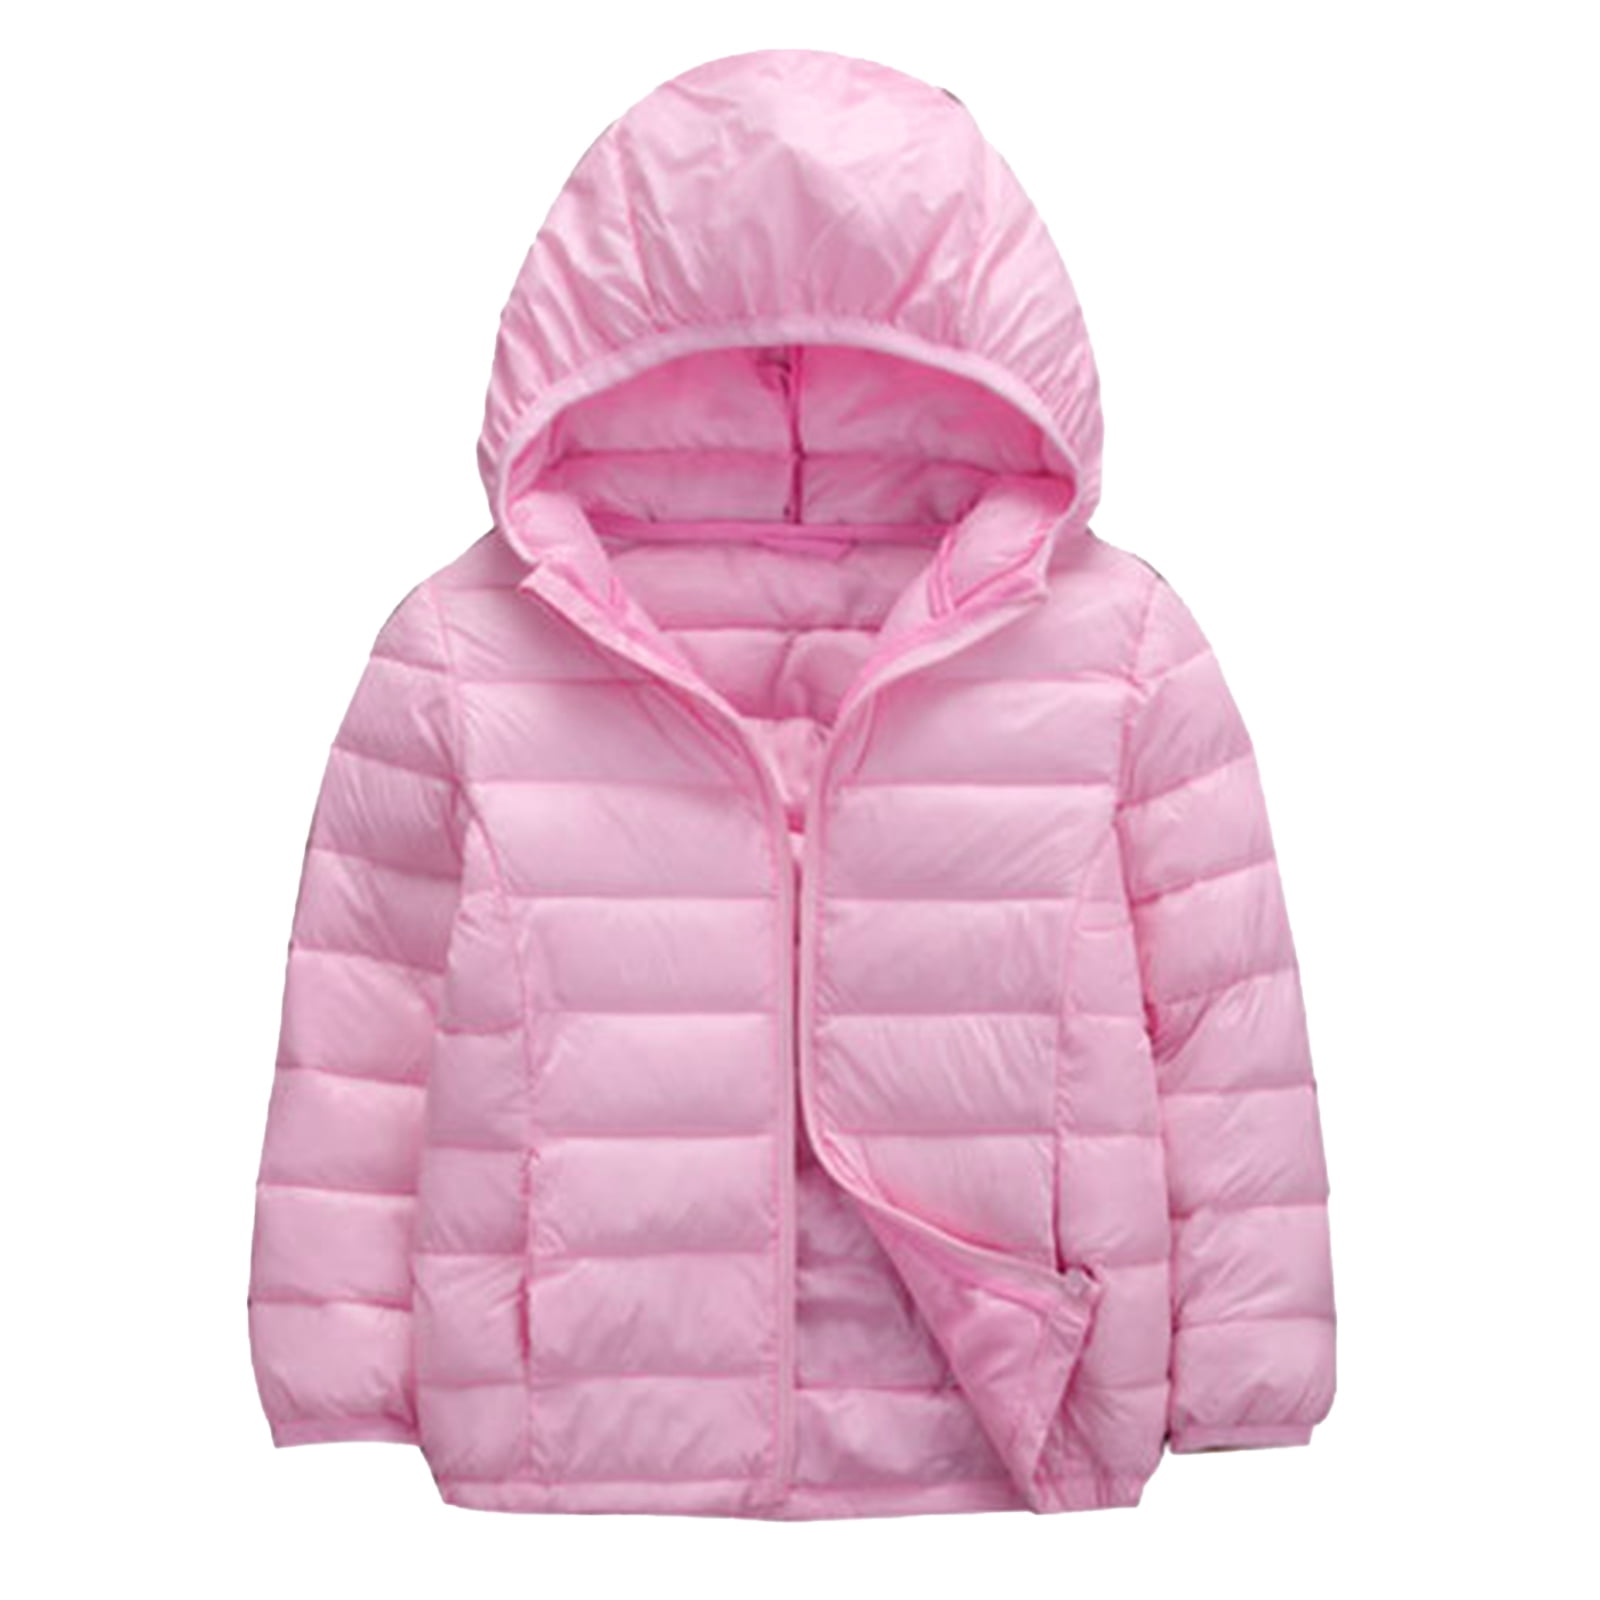 iiniim Kids Boys Girls Winter Coats Windproof Lightweight Puffer Jacket ...